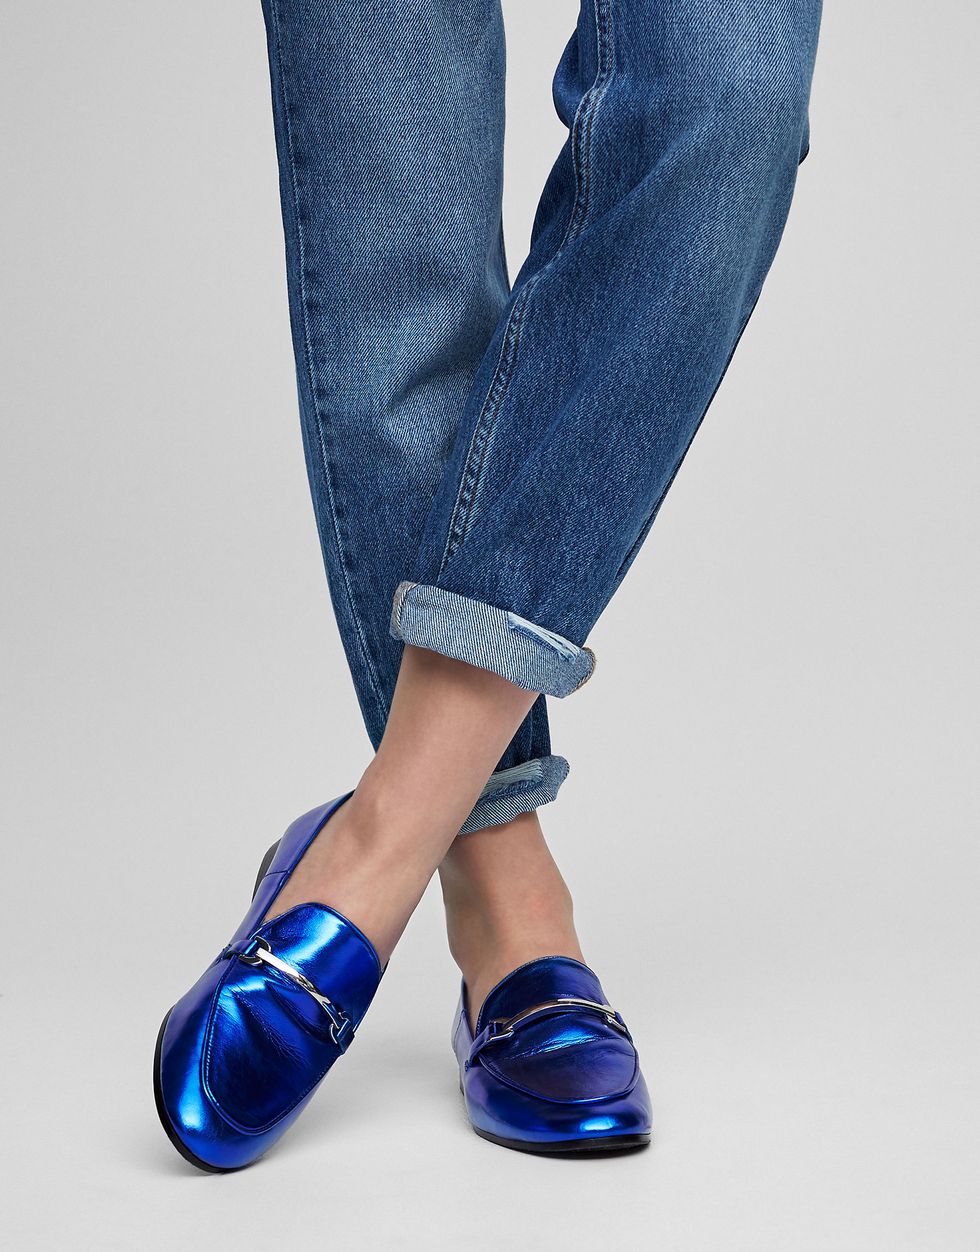 Blue, Denim, Jeans, Trousers, Human leg, Shoe, Textile, Joint, Electric blue, Cobalt blue, 